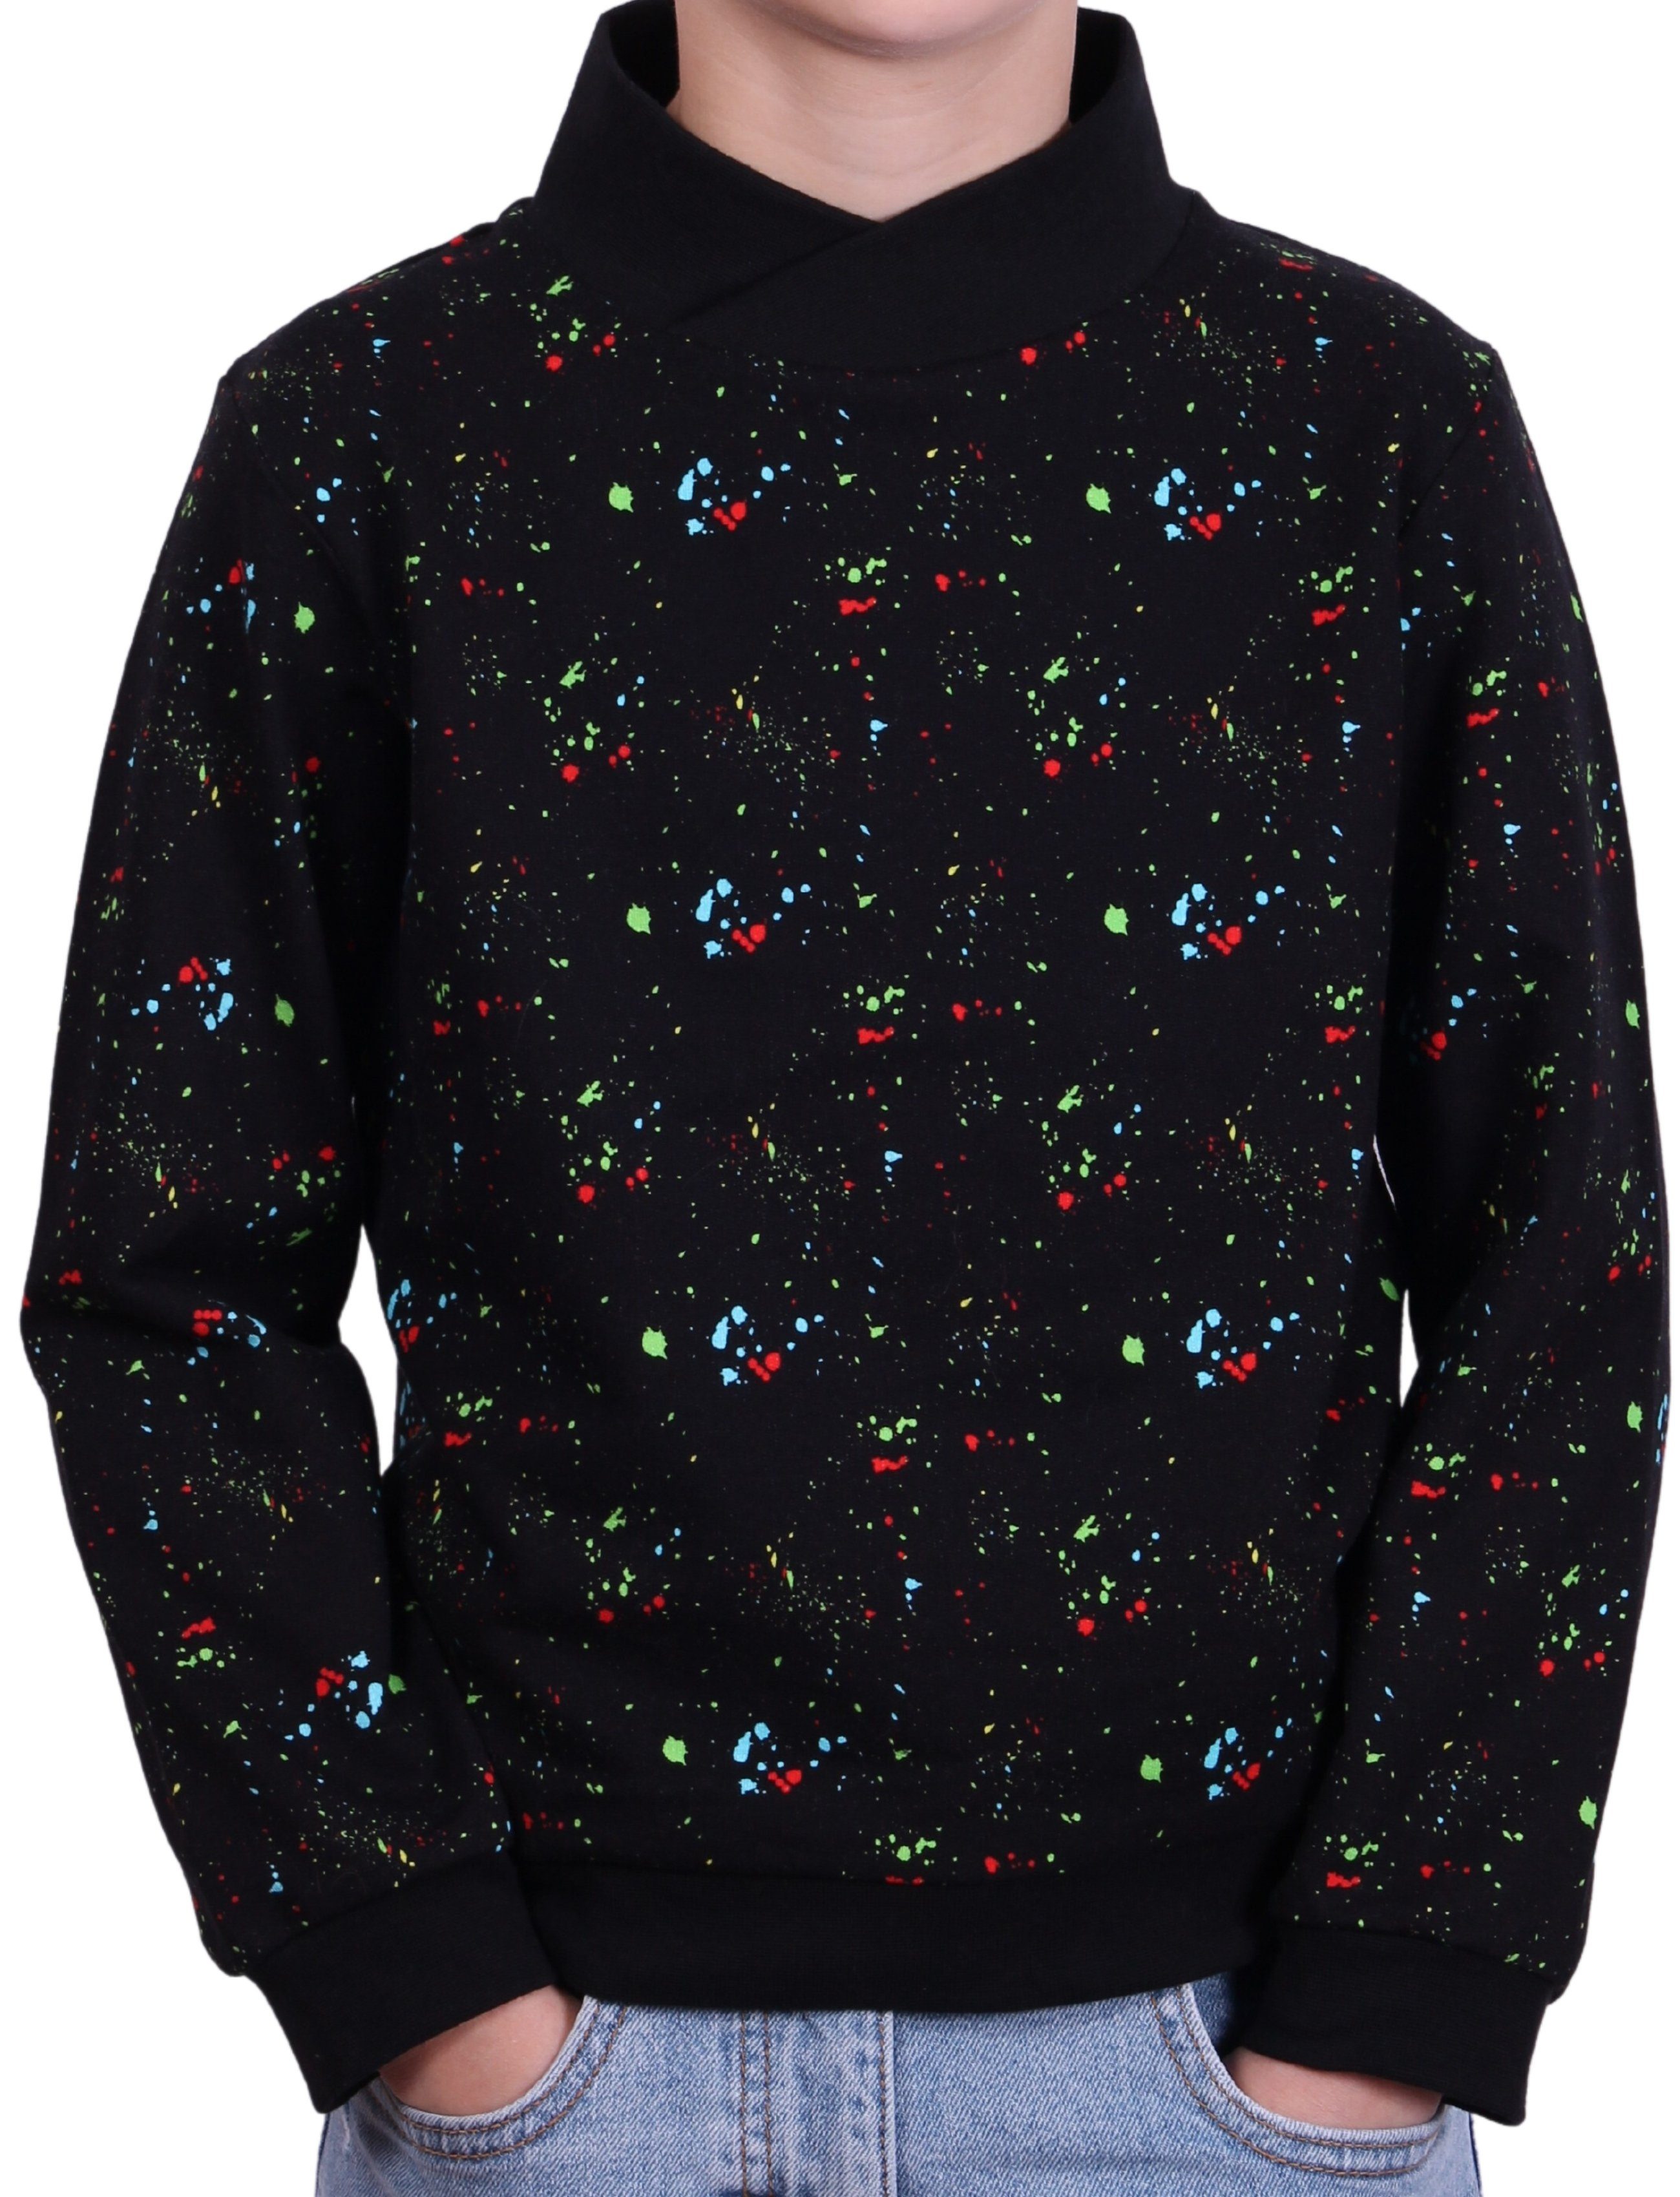 coolismo Sweater Kinder Sweatshirt Baumwolle, Pullover farbigem Jungen Produktion europäische Splash-Print mit